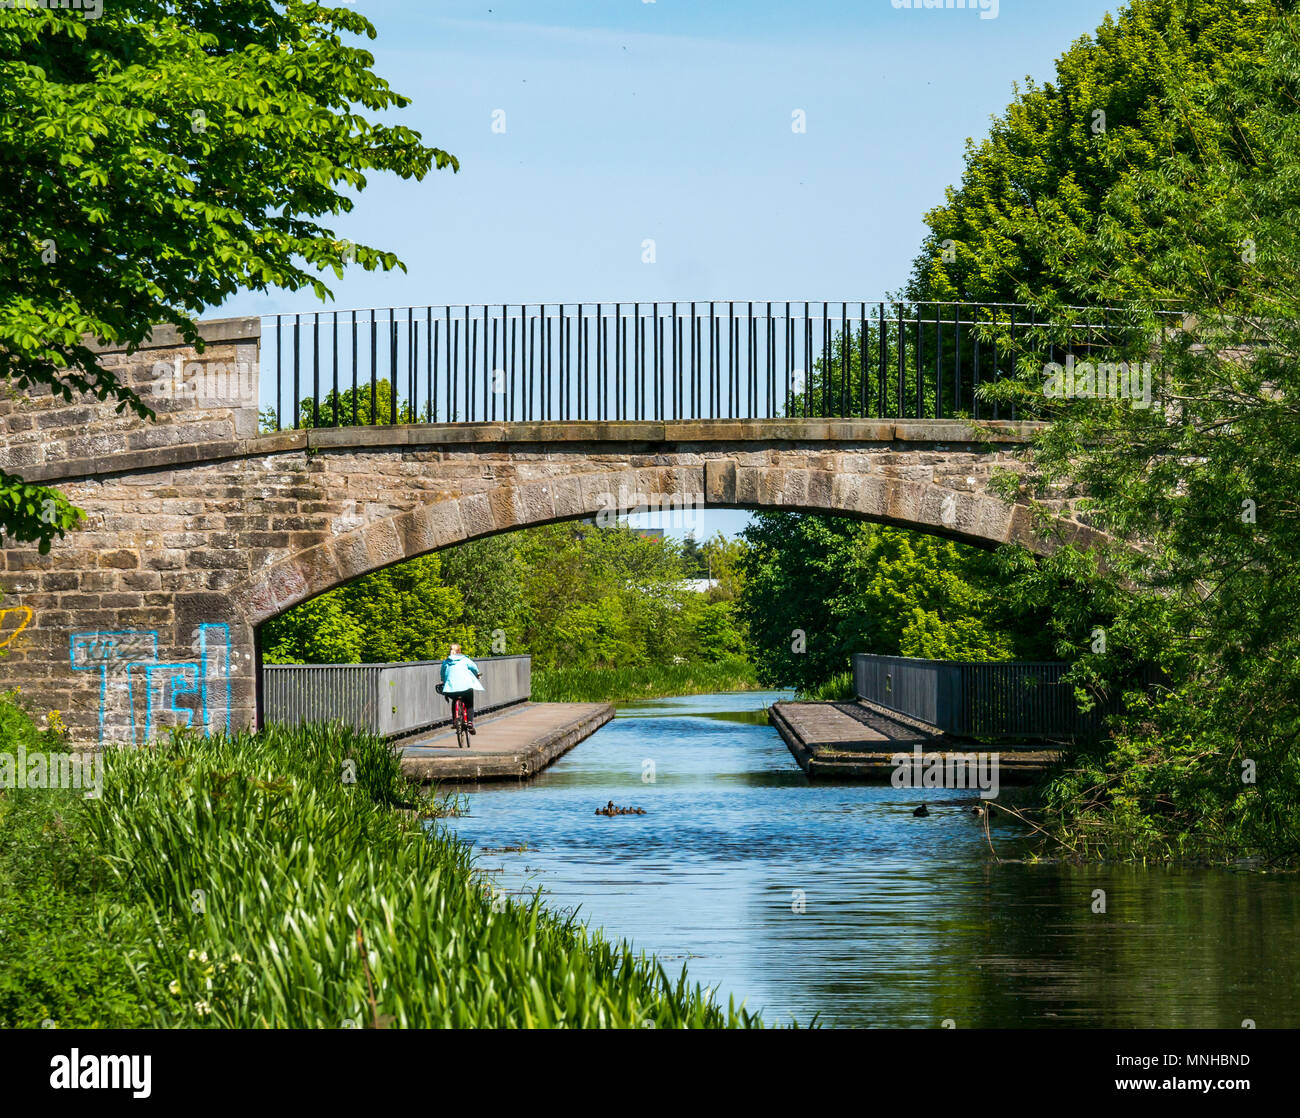 Union canal, Édimbourg, Écosse, Royaume-Uni, 17 mai 2018. Un cycliste sur le chemin du canal sur une journée ensoleillée et une femelle Canard colvert avec une couvée de canetons dans le canal 7 Banque D'Images